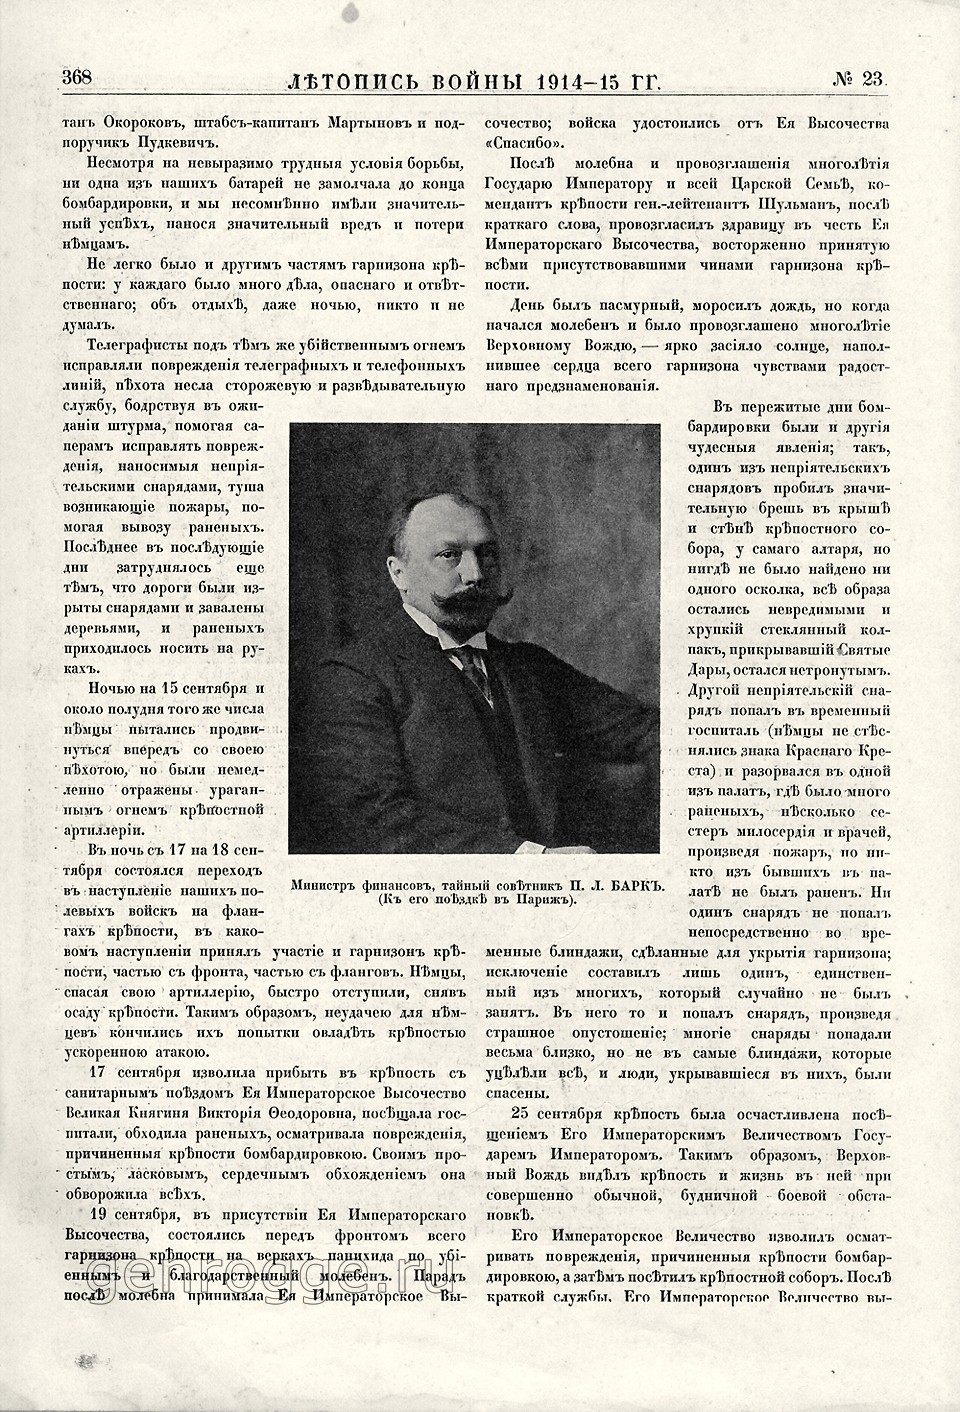   1914-15 . `1915 .,  23, . 368